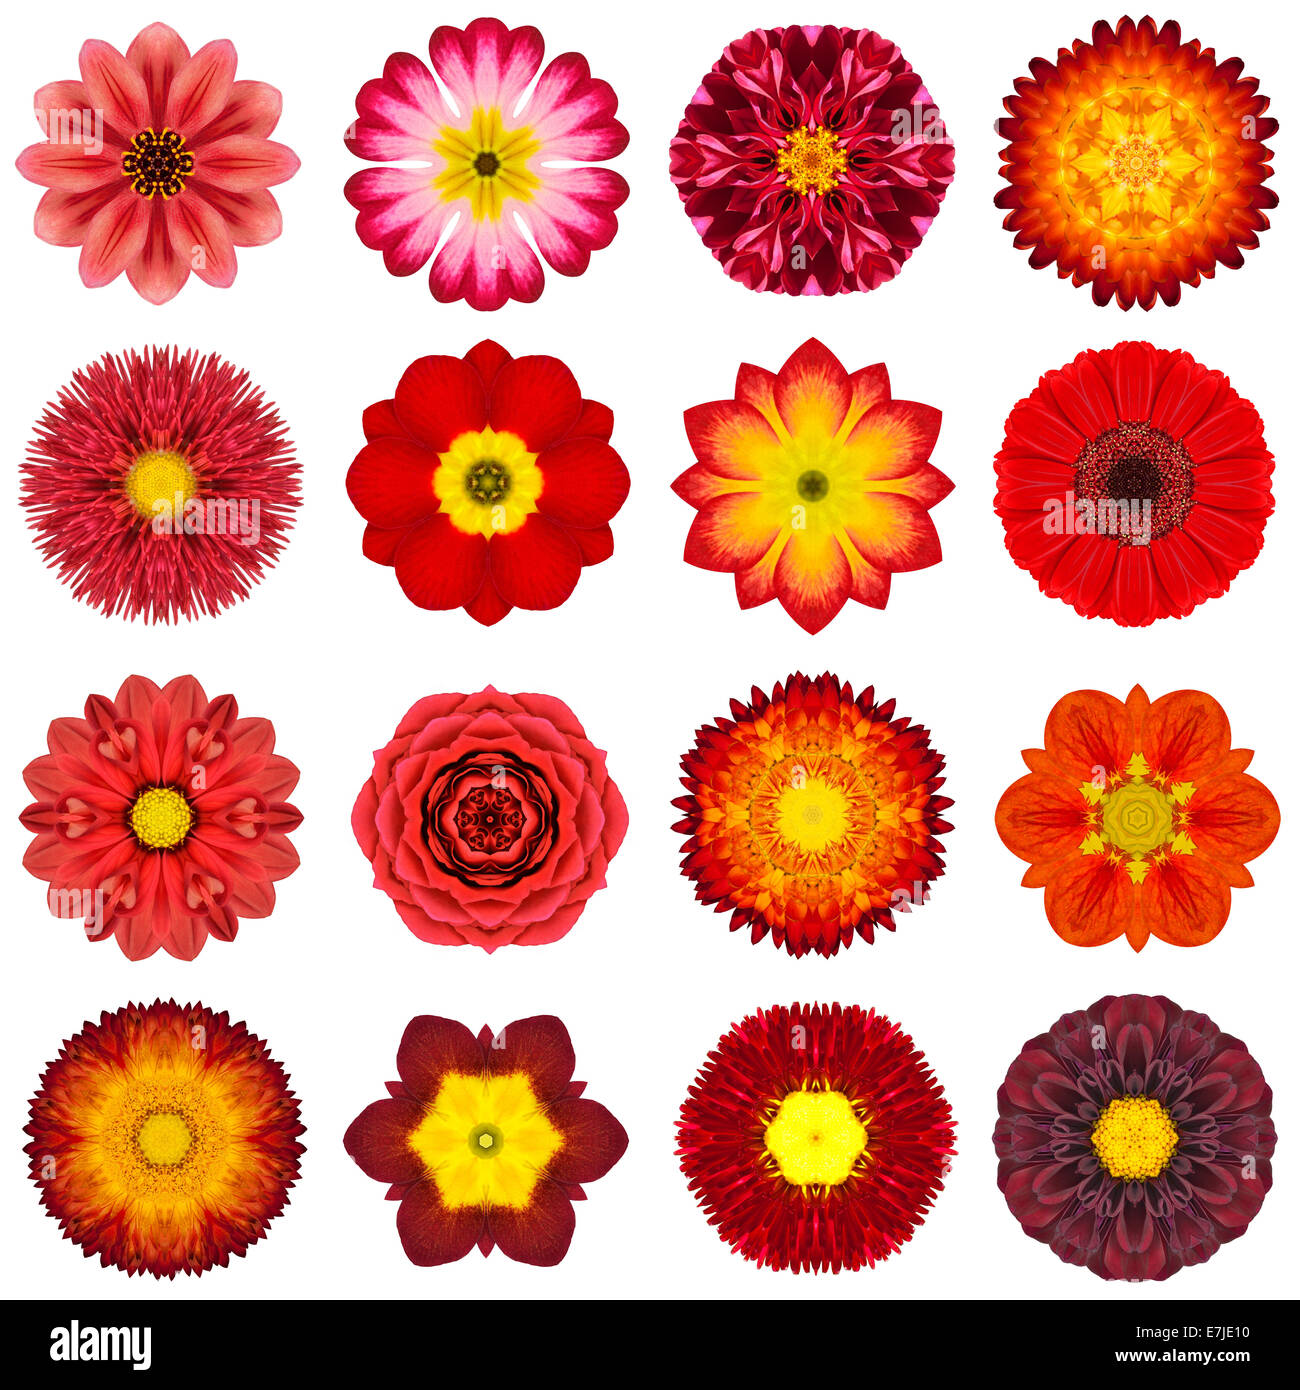 Große Sammlung von verschiedenen roten konzentrische Muster Blumen. Kaleidoskopische Mandala-Muster, Isolated on White Background. Concentri Stockfoto